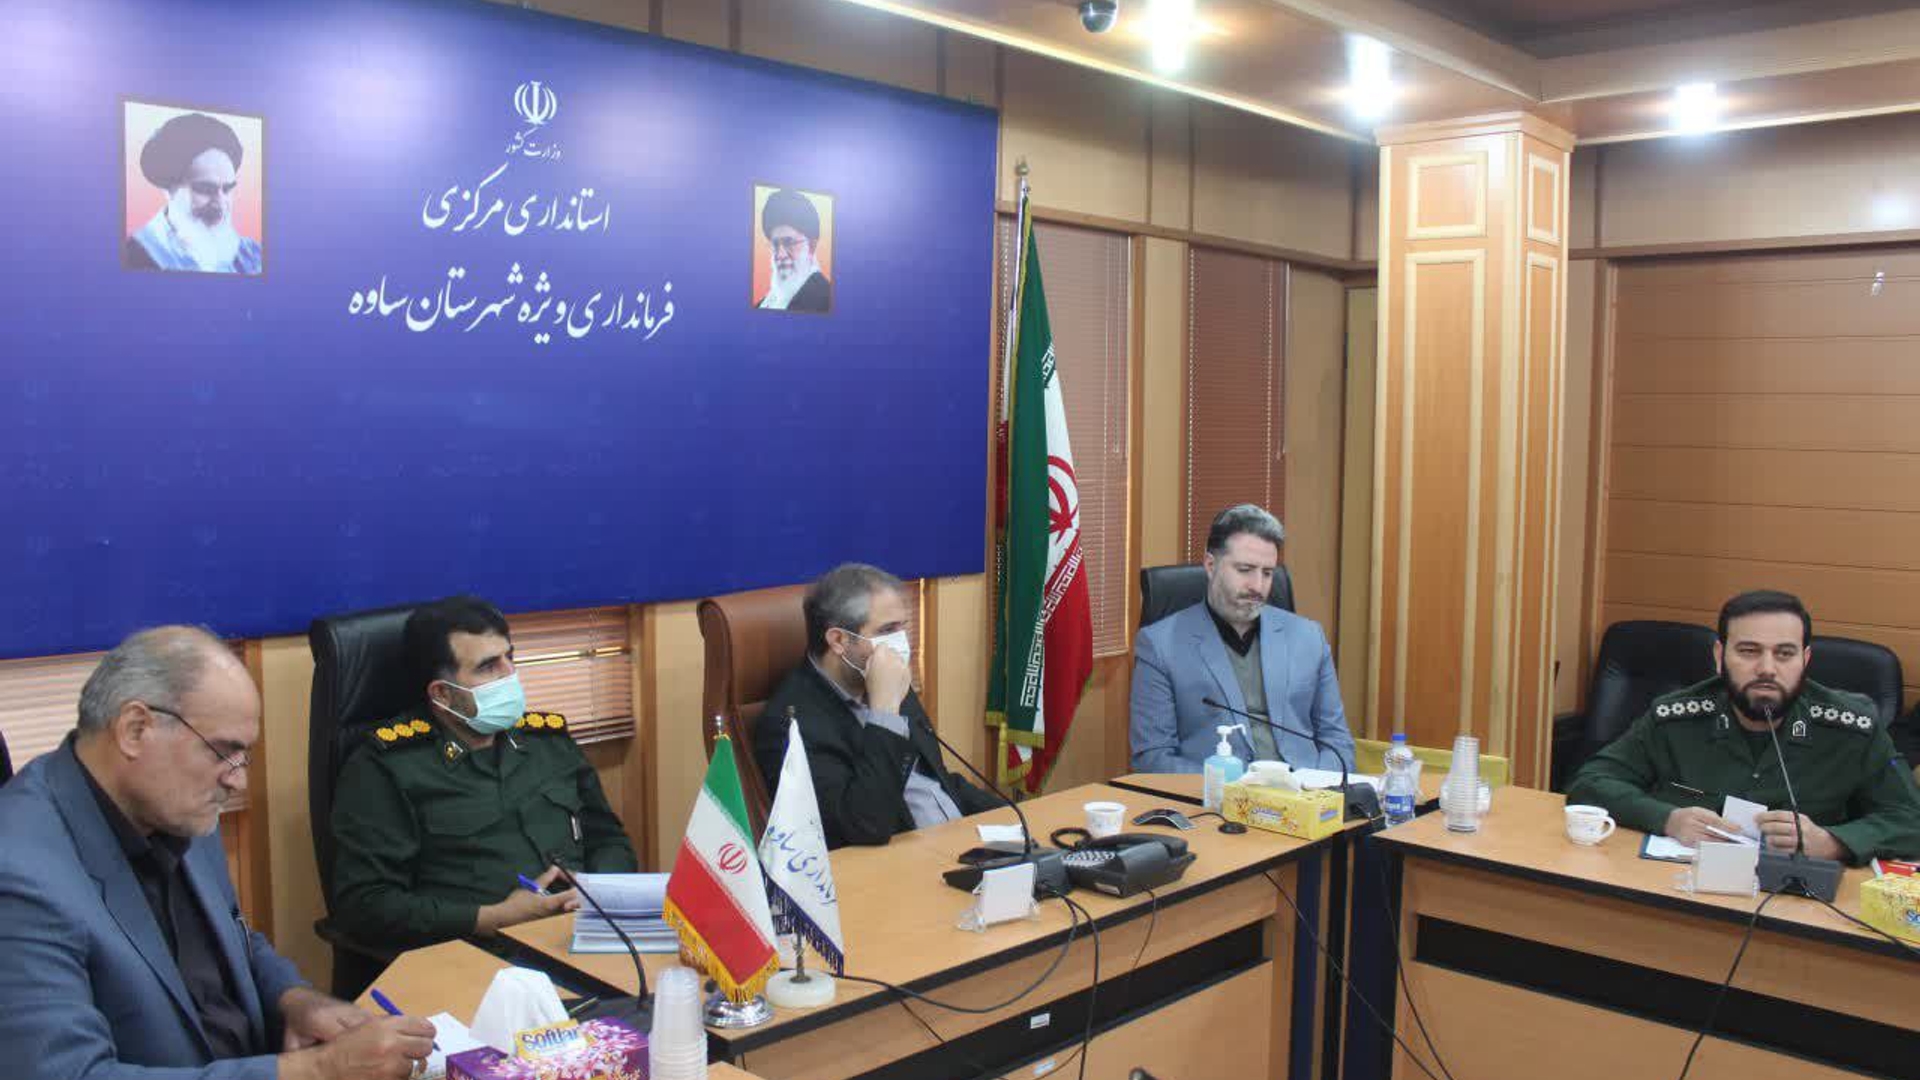 نشست صمیمی گروه های جهادی با معاون استاندار و فرماندار ویژه شهرستان ساوه